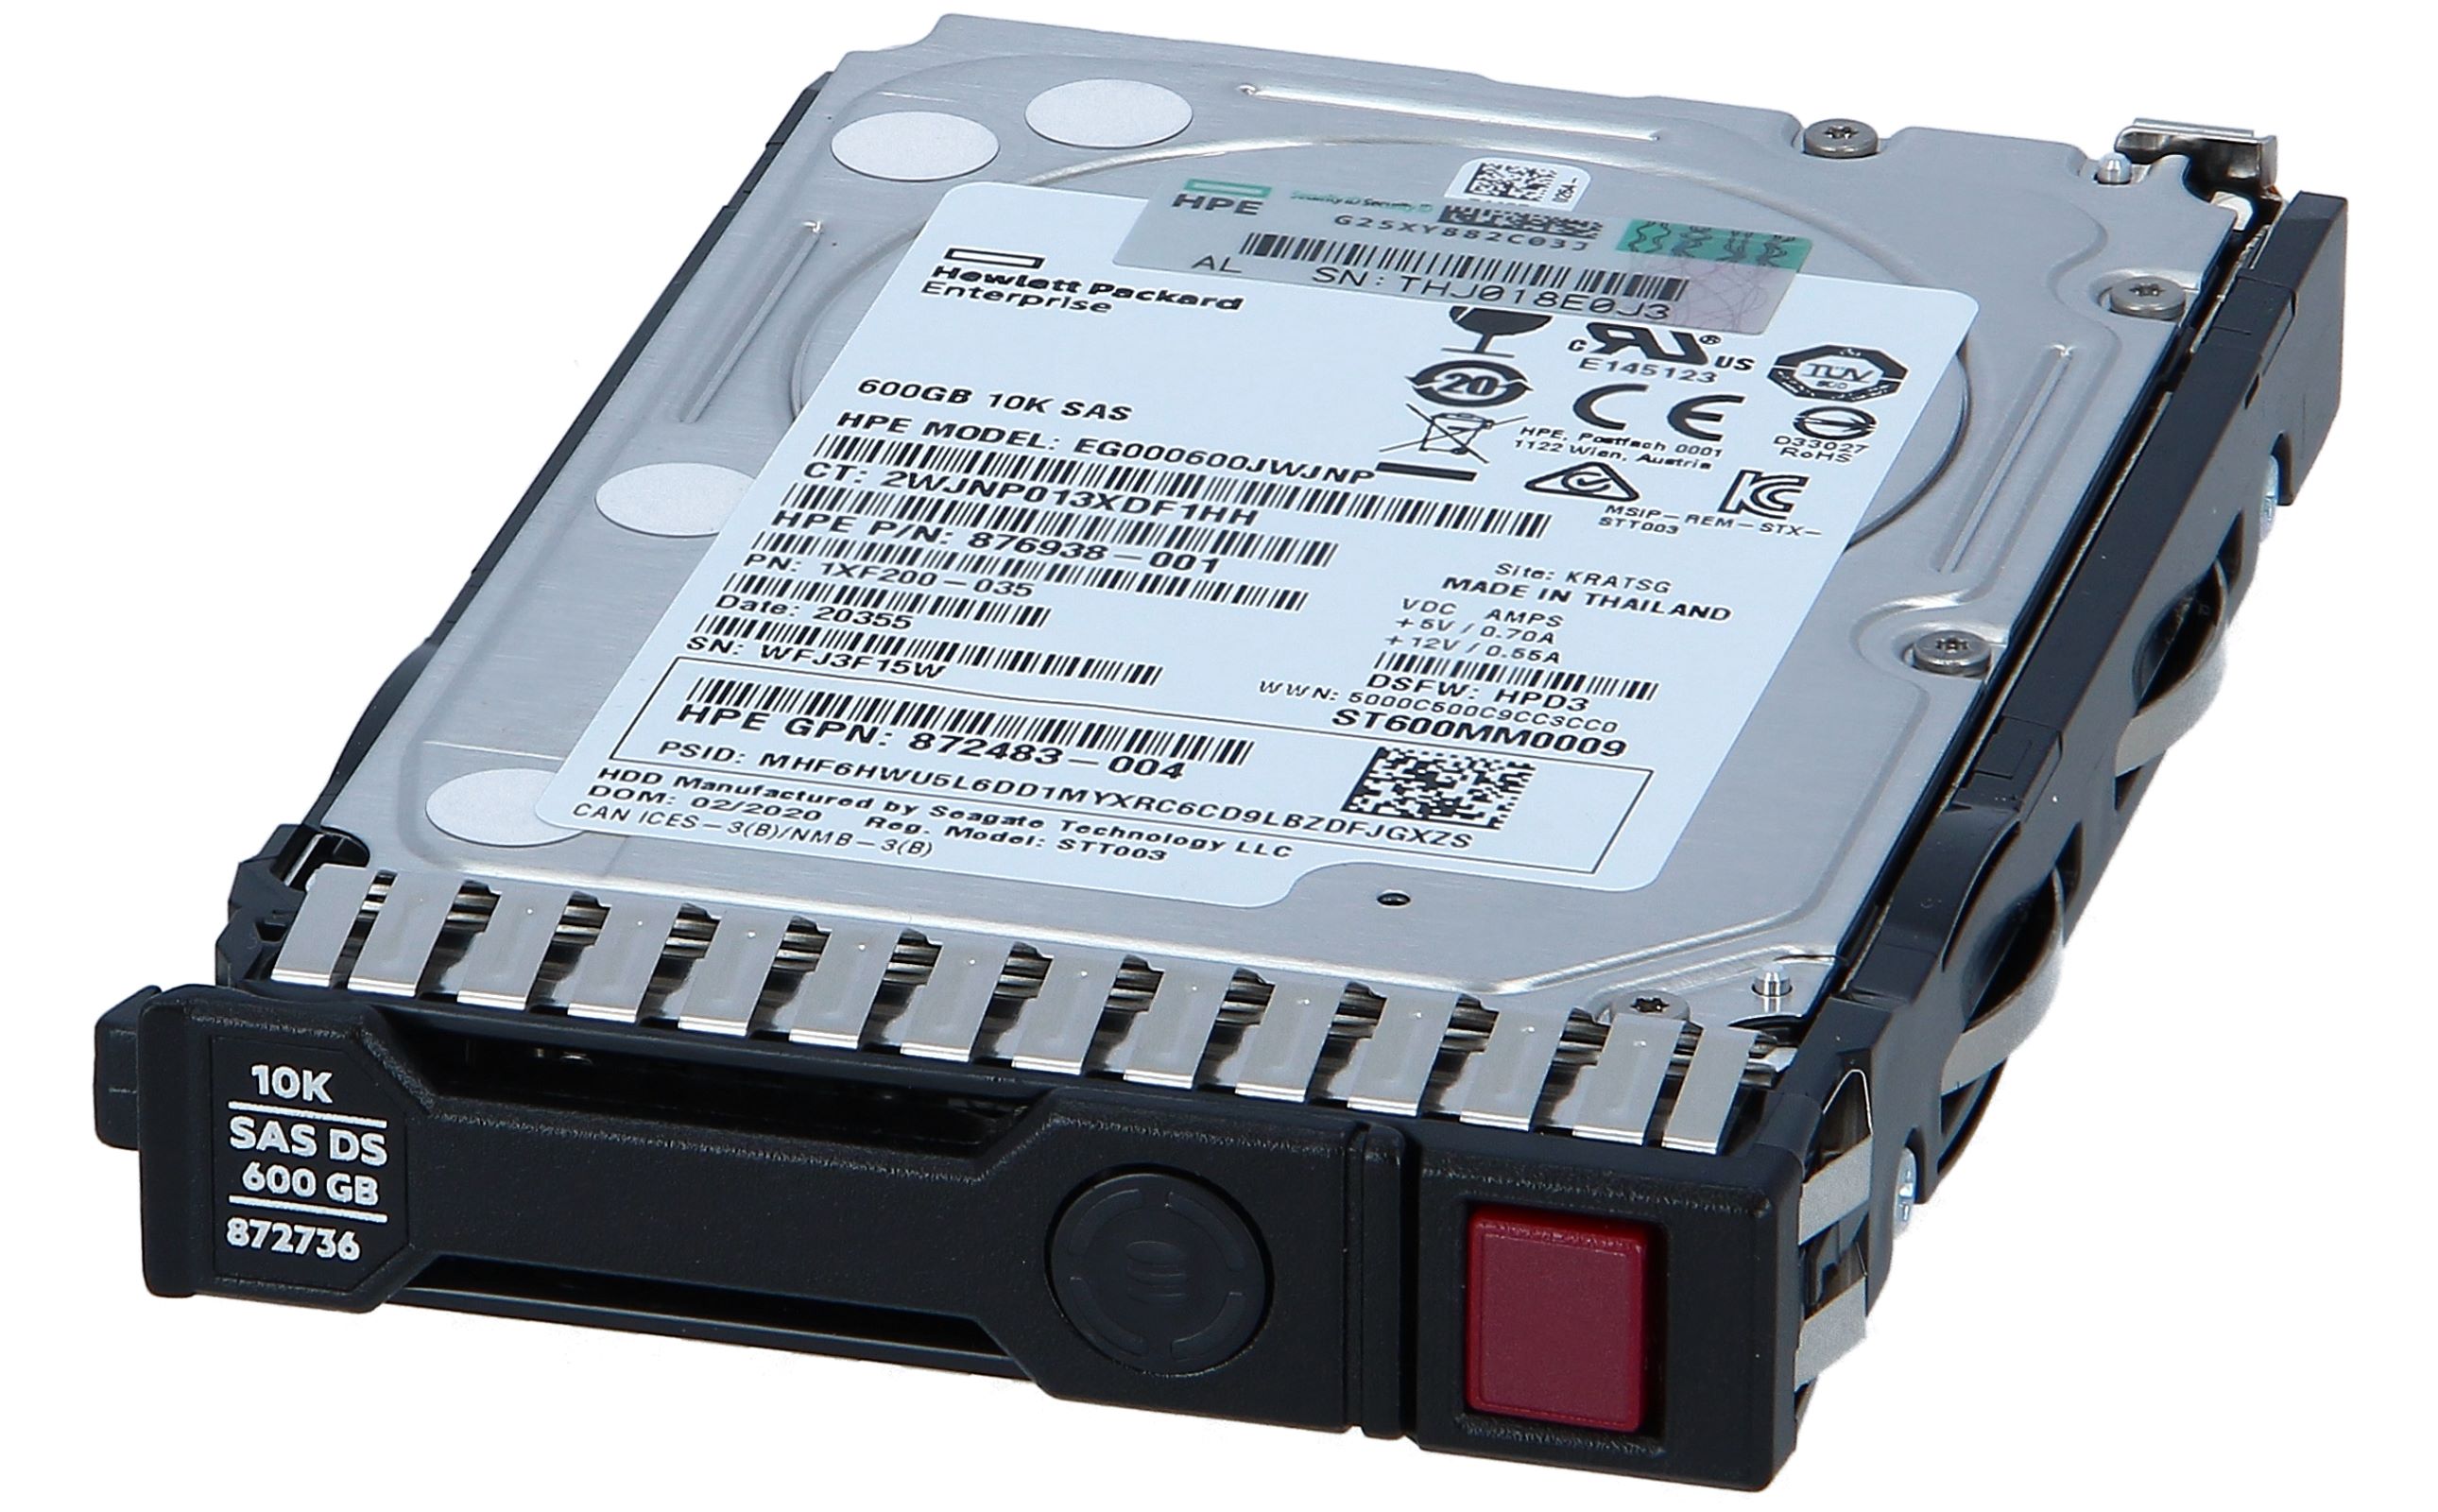 日本ヒューレット・パッカード 900GB 15krpm SC 2.5型 12G SAS DS ハードディスクドライブ 870759-B21